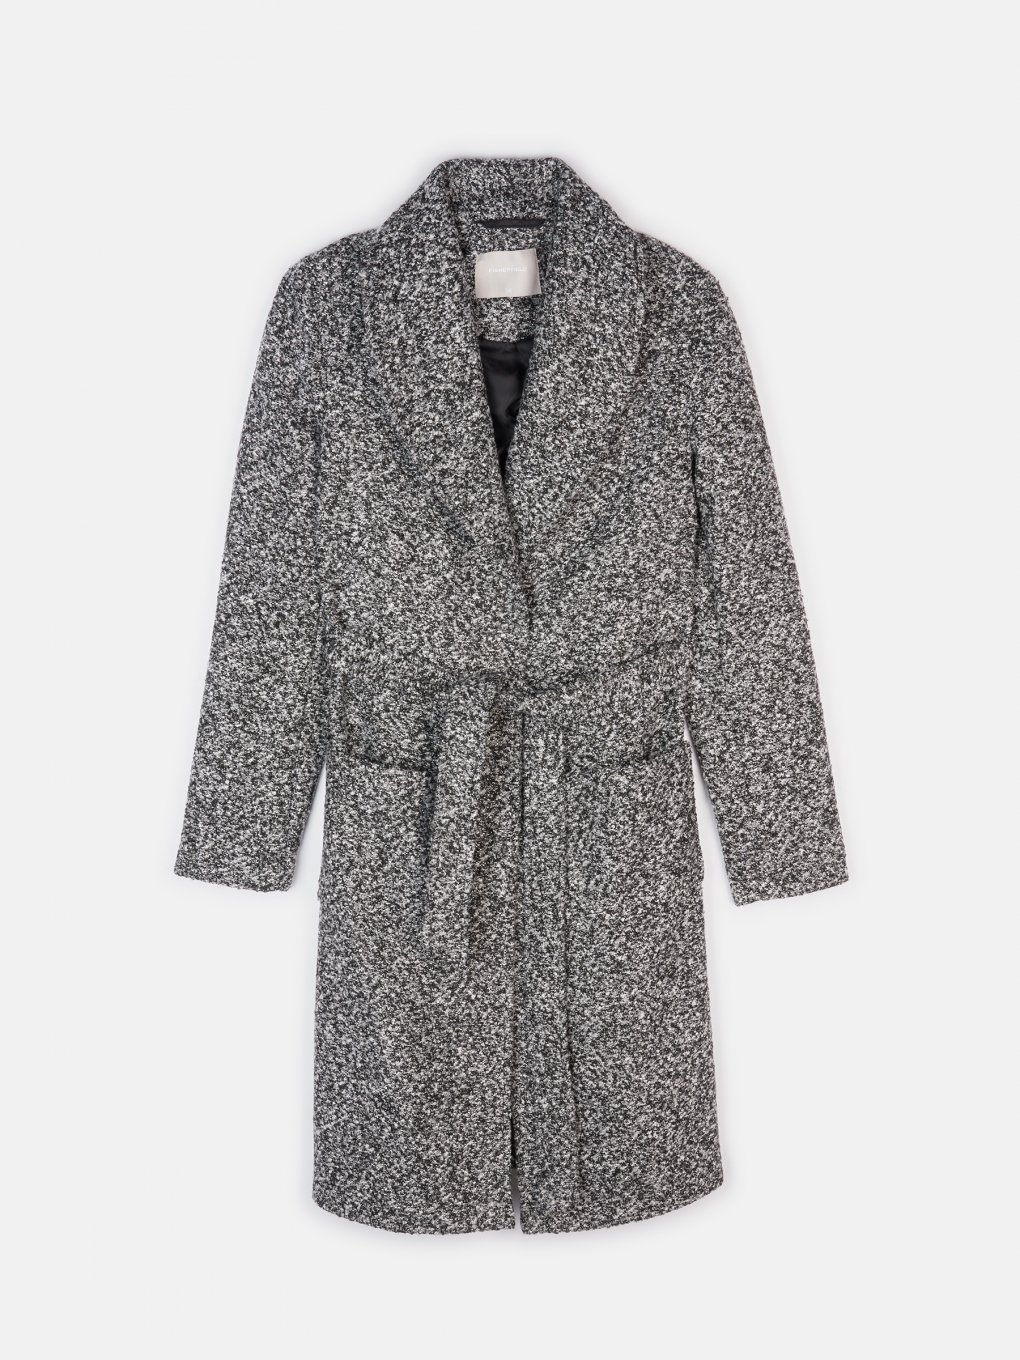 Marled robe coat